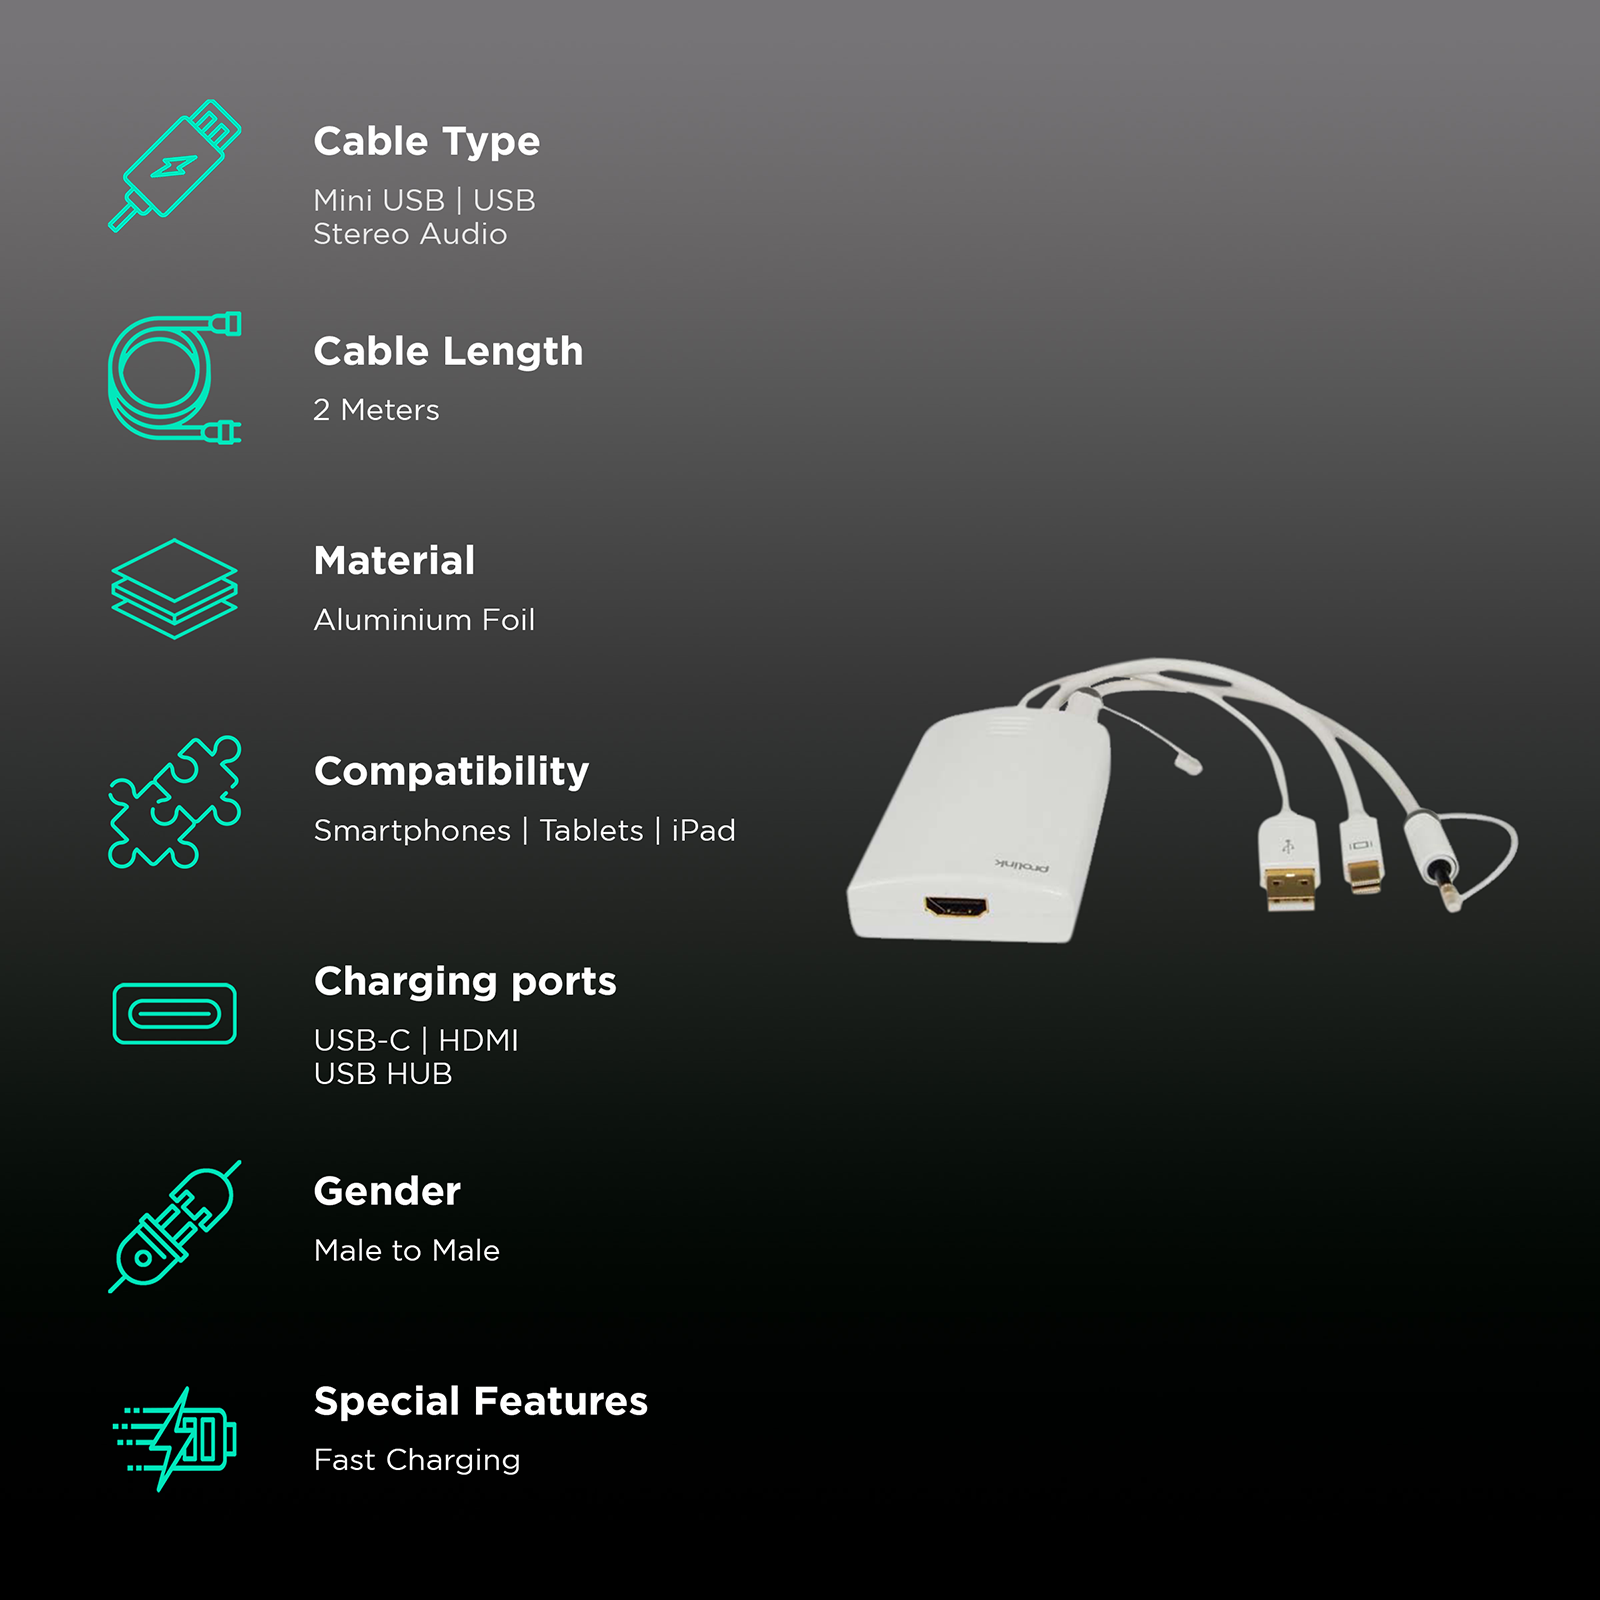 MINIPRO Standard USB Mini B Cable - 20in – MINIPRO®